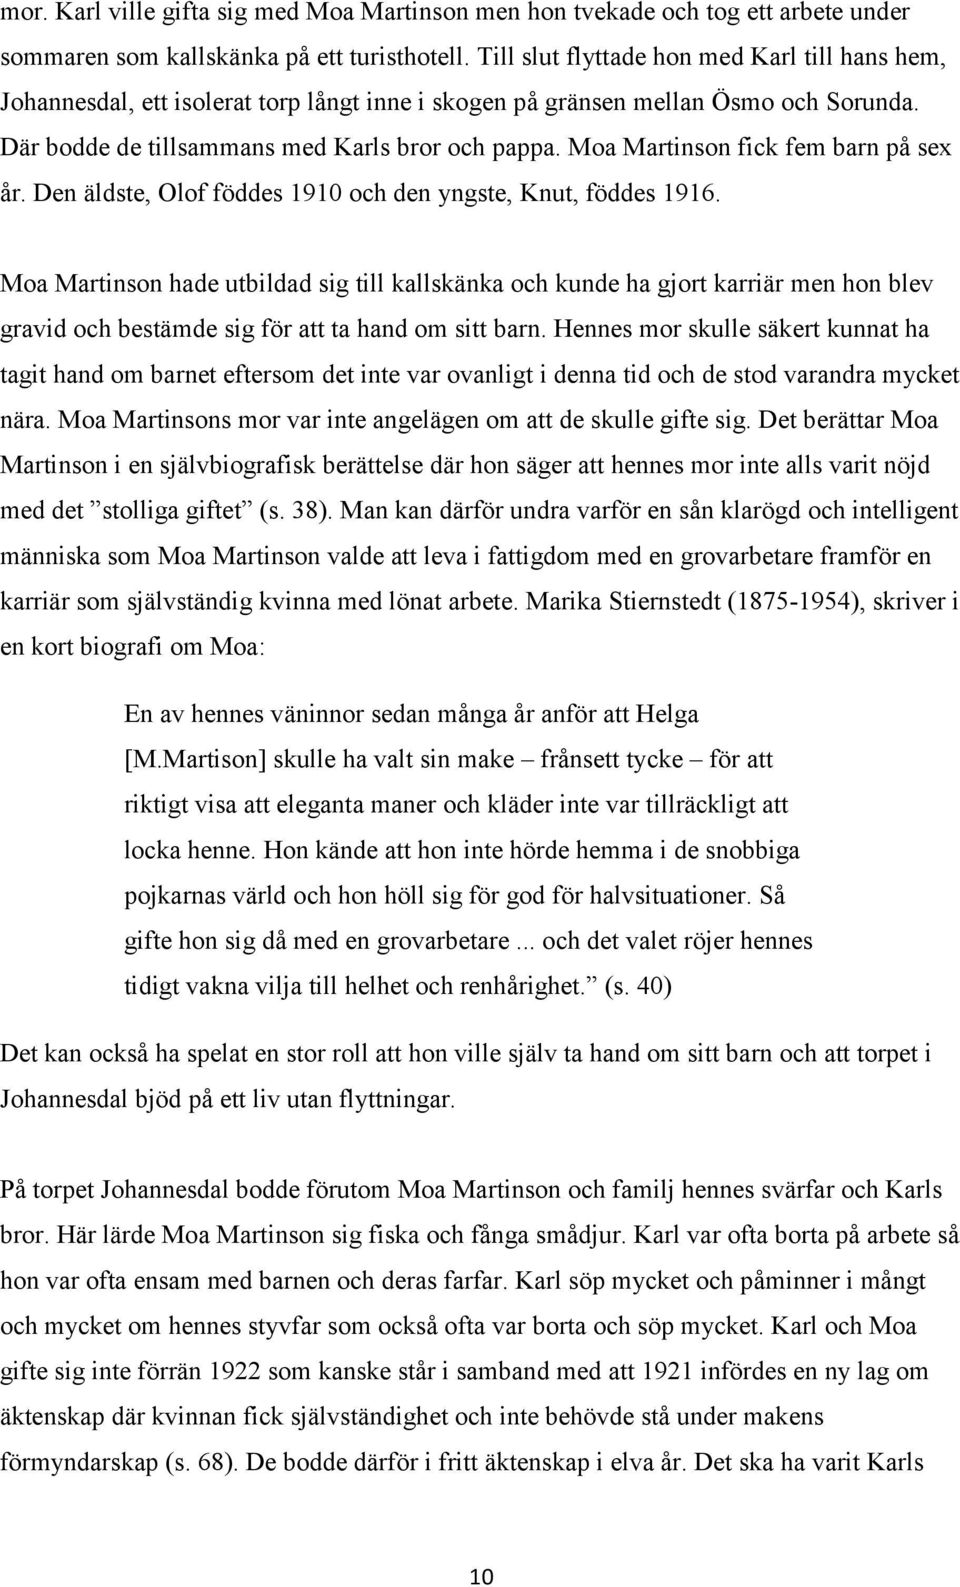 Moa Martinson fick fem barn på sex år. Den äldste, Olof föddes 1910 och den yngste, Knut, föddes 1916.